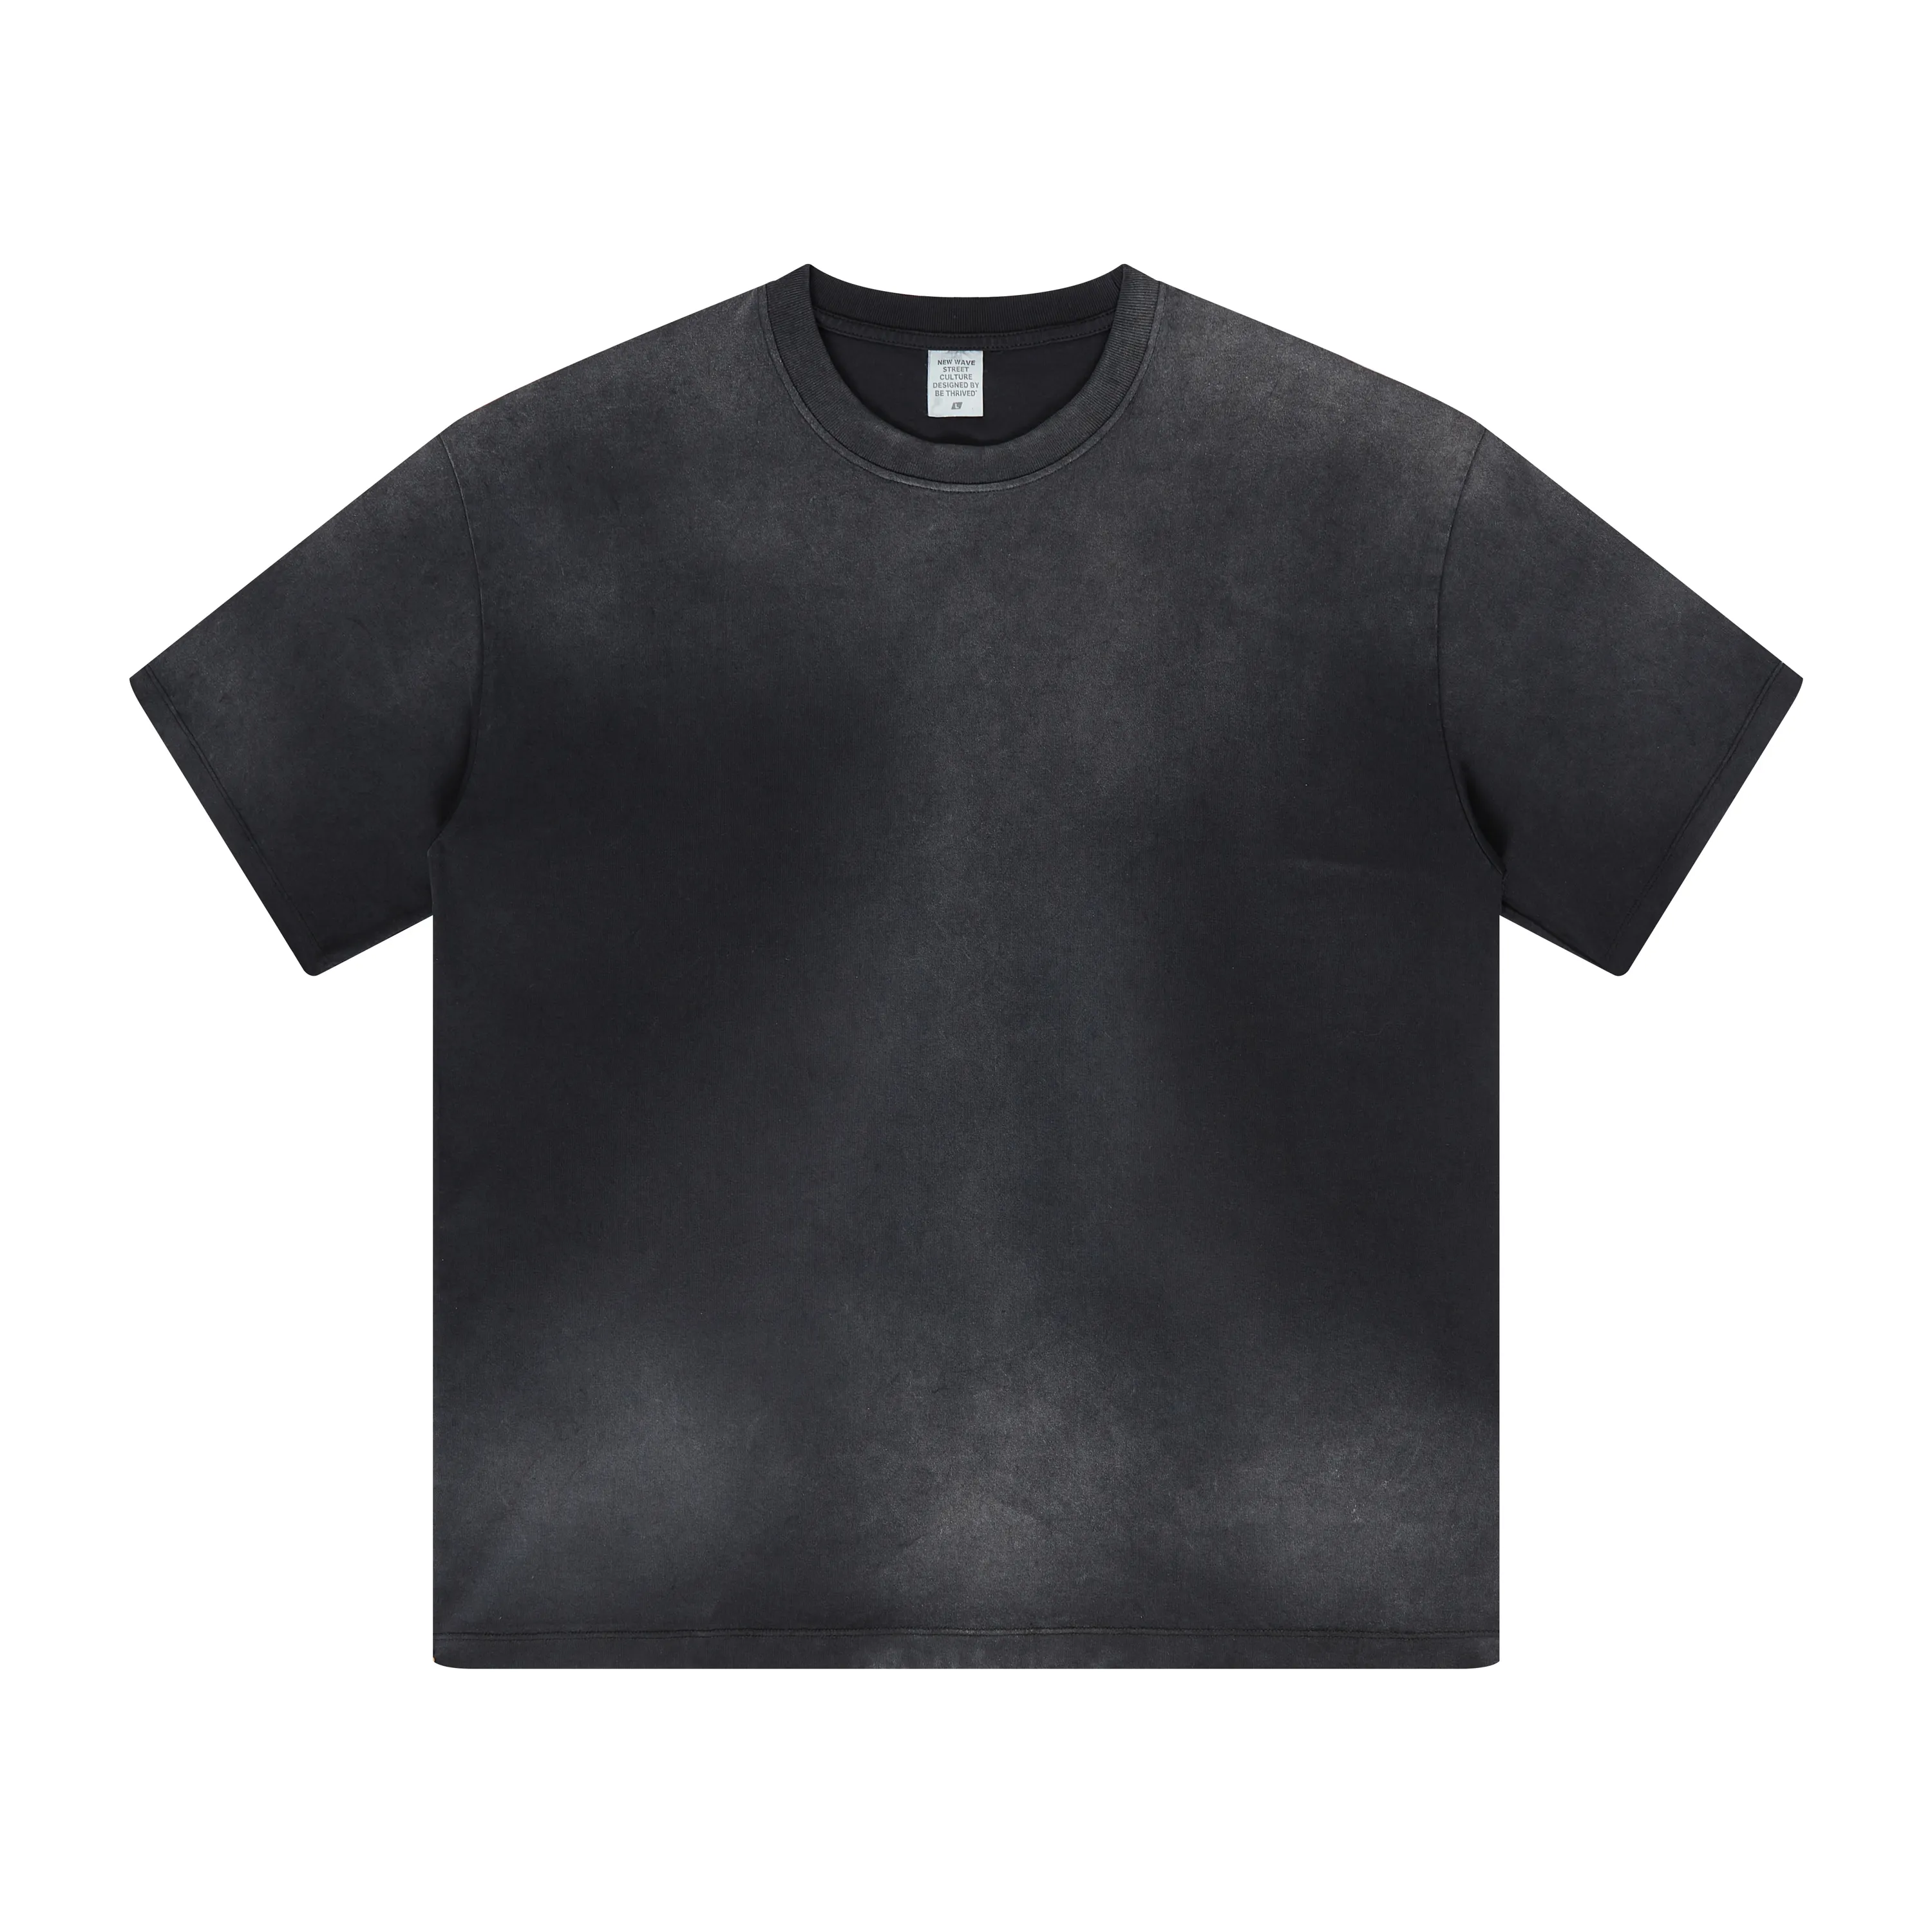 T-shirt da uomo stampate personalizzate con logo Vintage Sun dissolvenza in cotone 100% pesante all'ingrosso di alta qualità